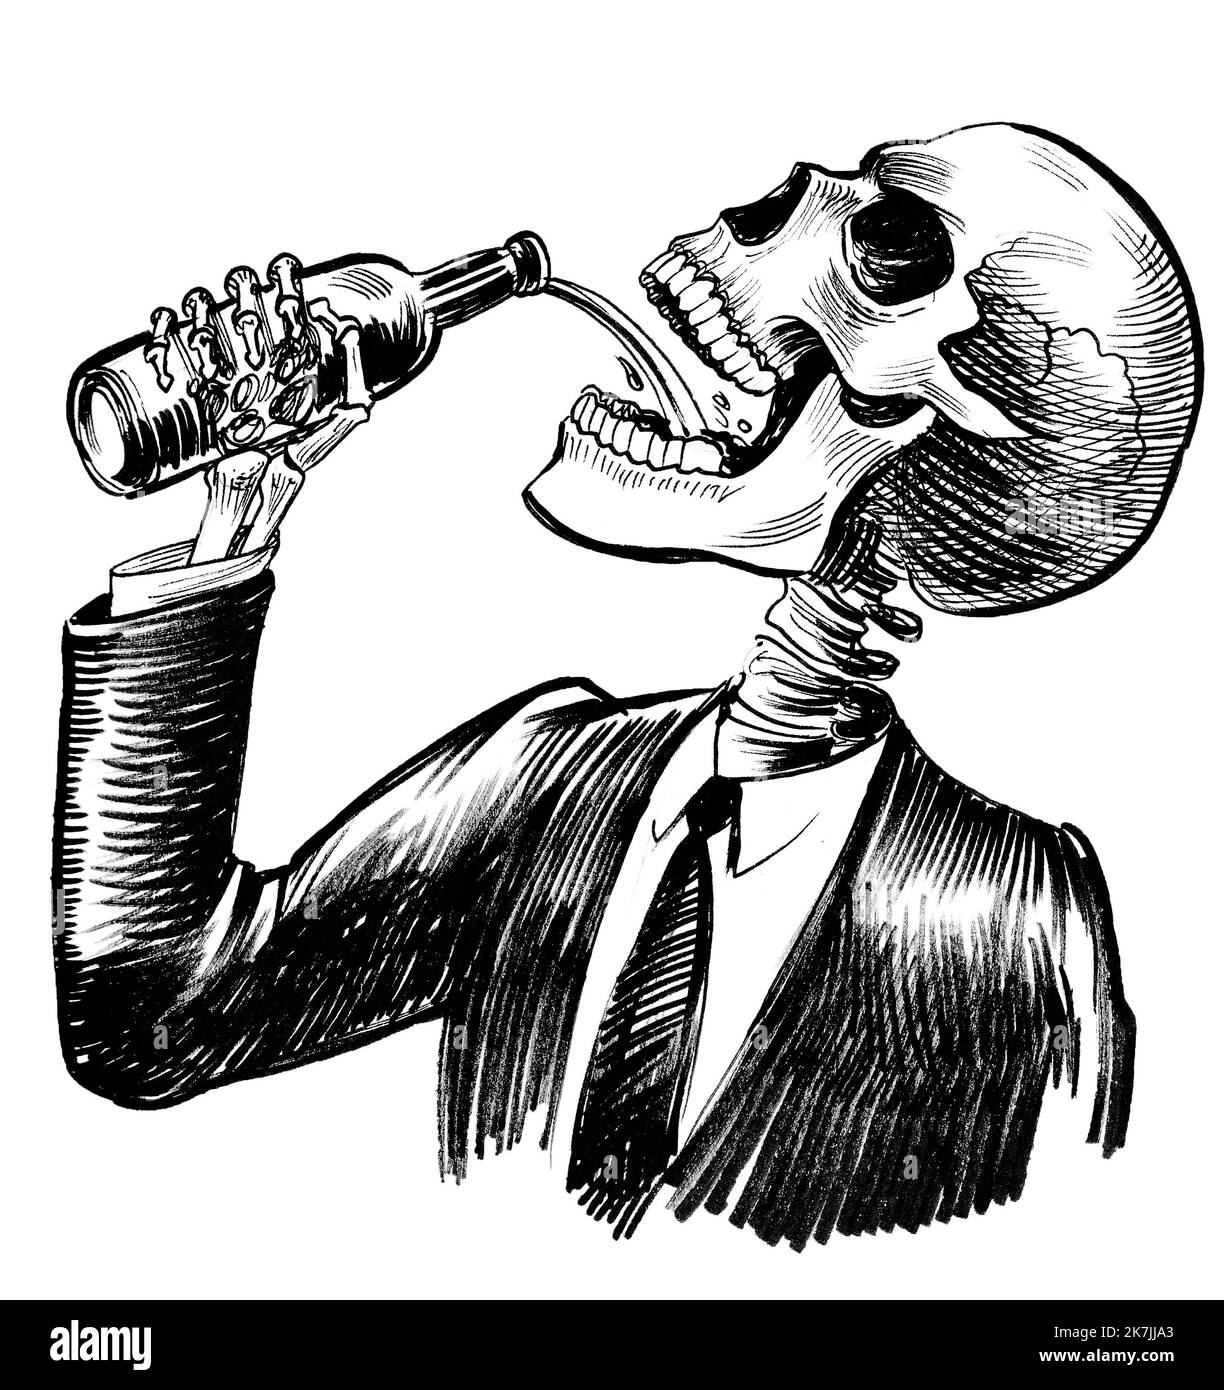 Squelette humain buvant de l'alcool. Dessin noir et blanc Banque D'Images